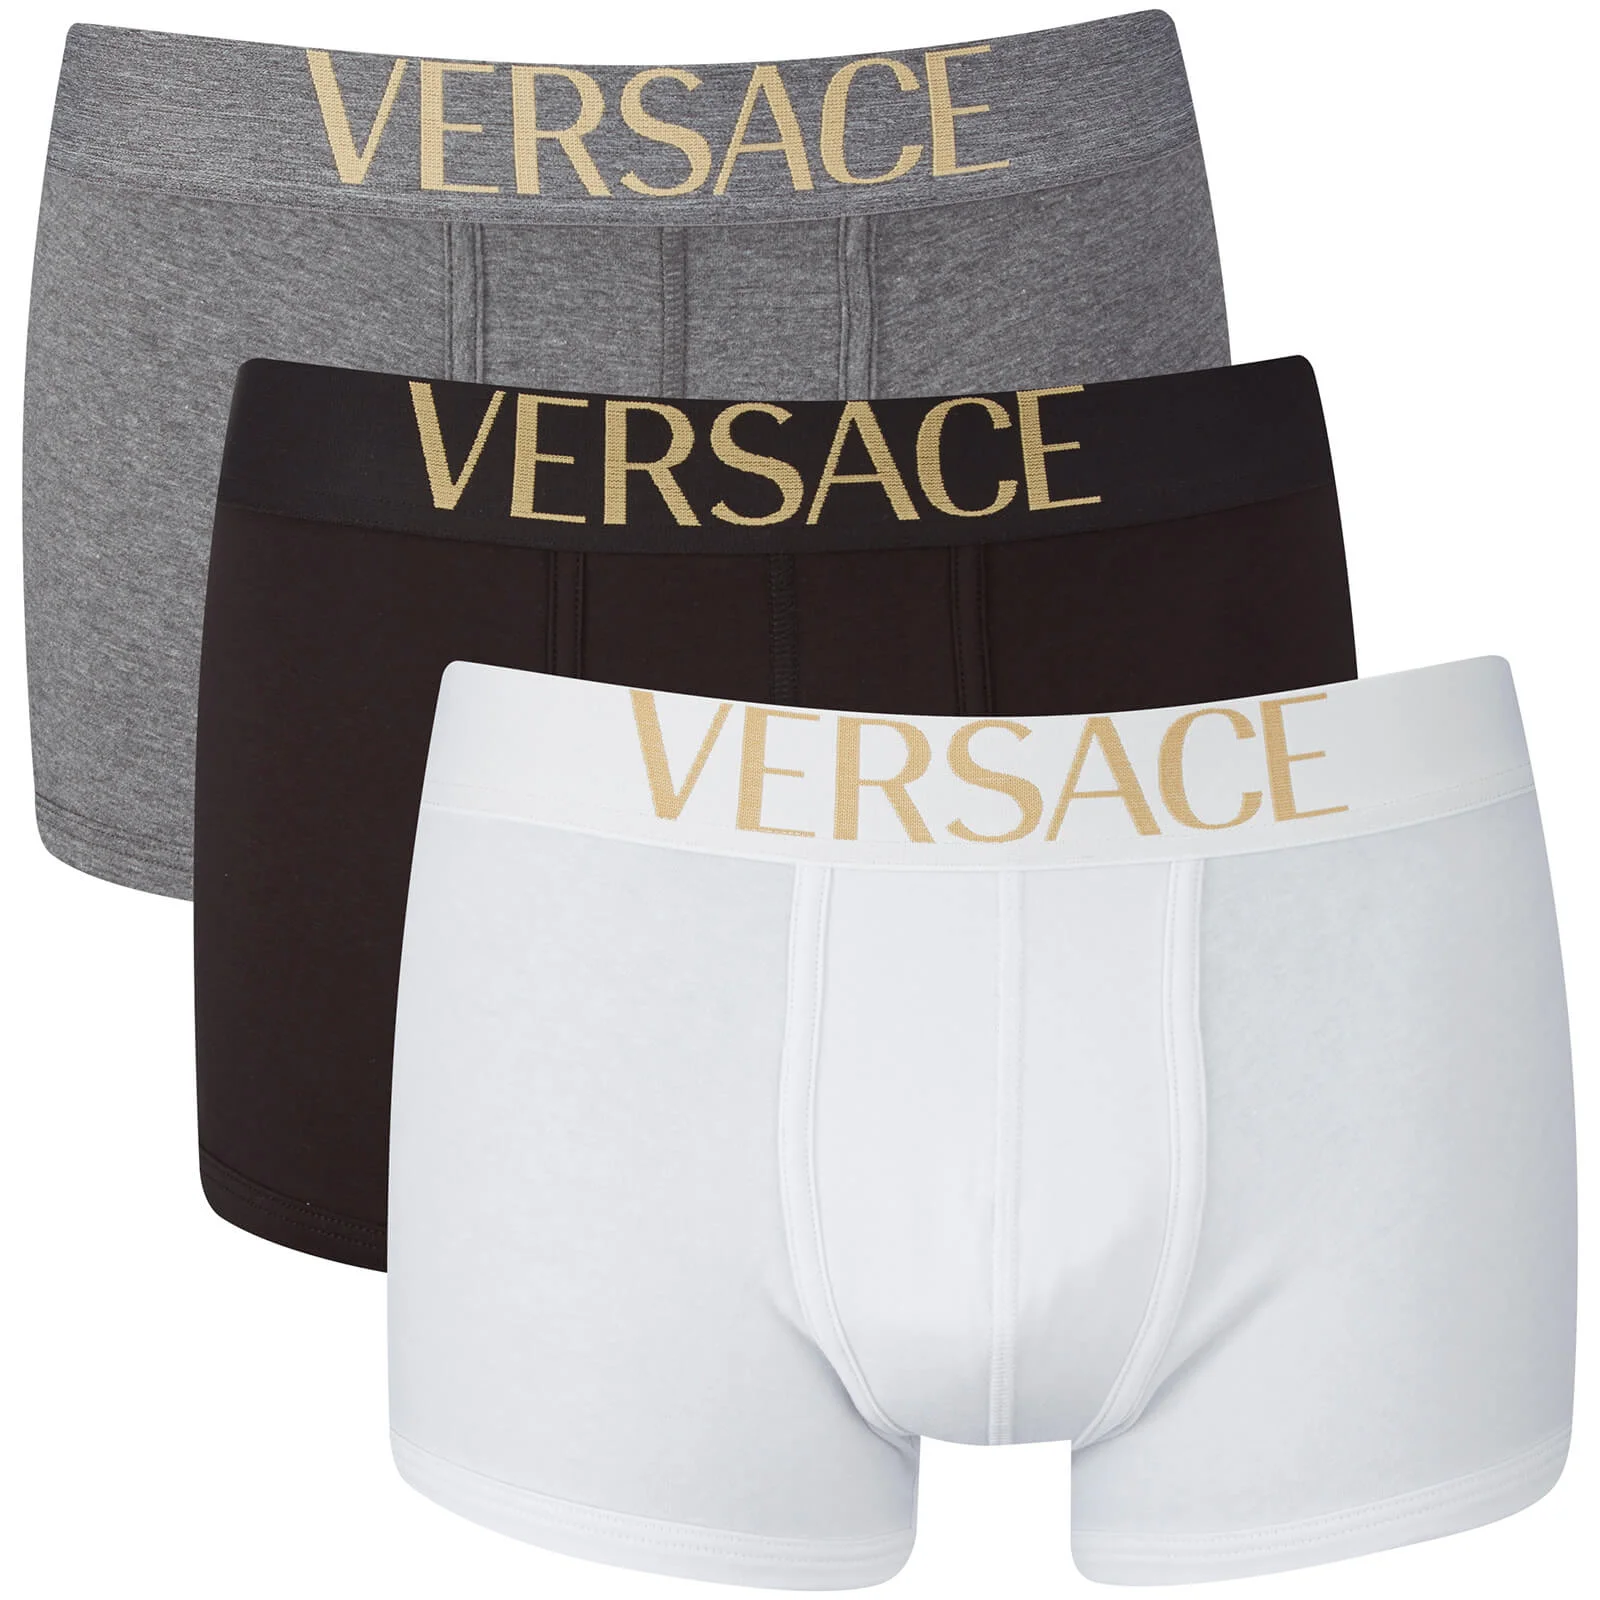 Versus Versace Men's Low Rise Trunks - Nero-Grigio-Bianco Image 1